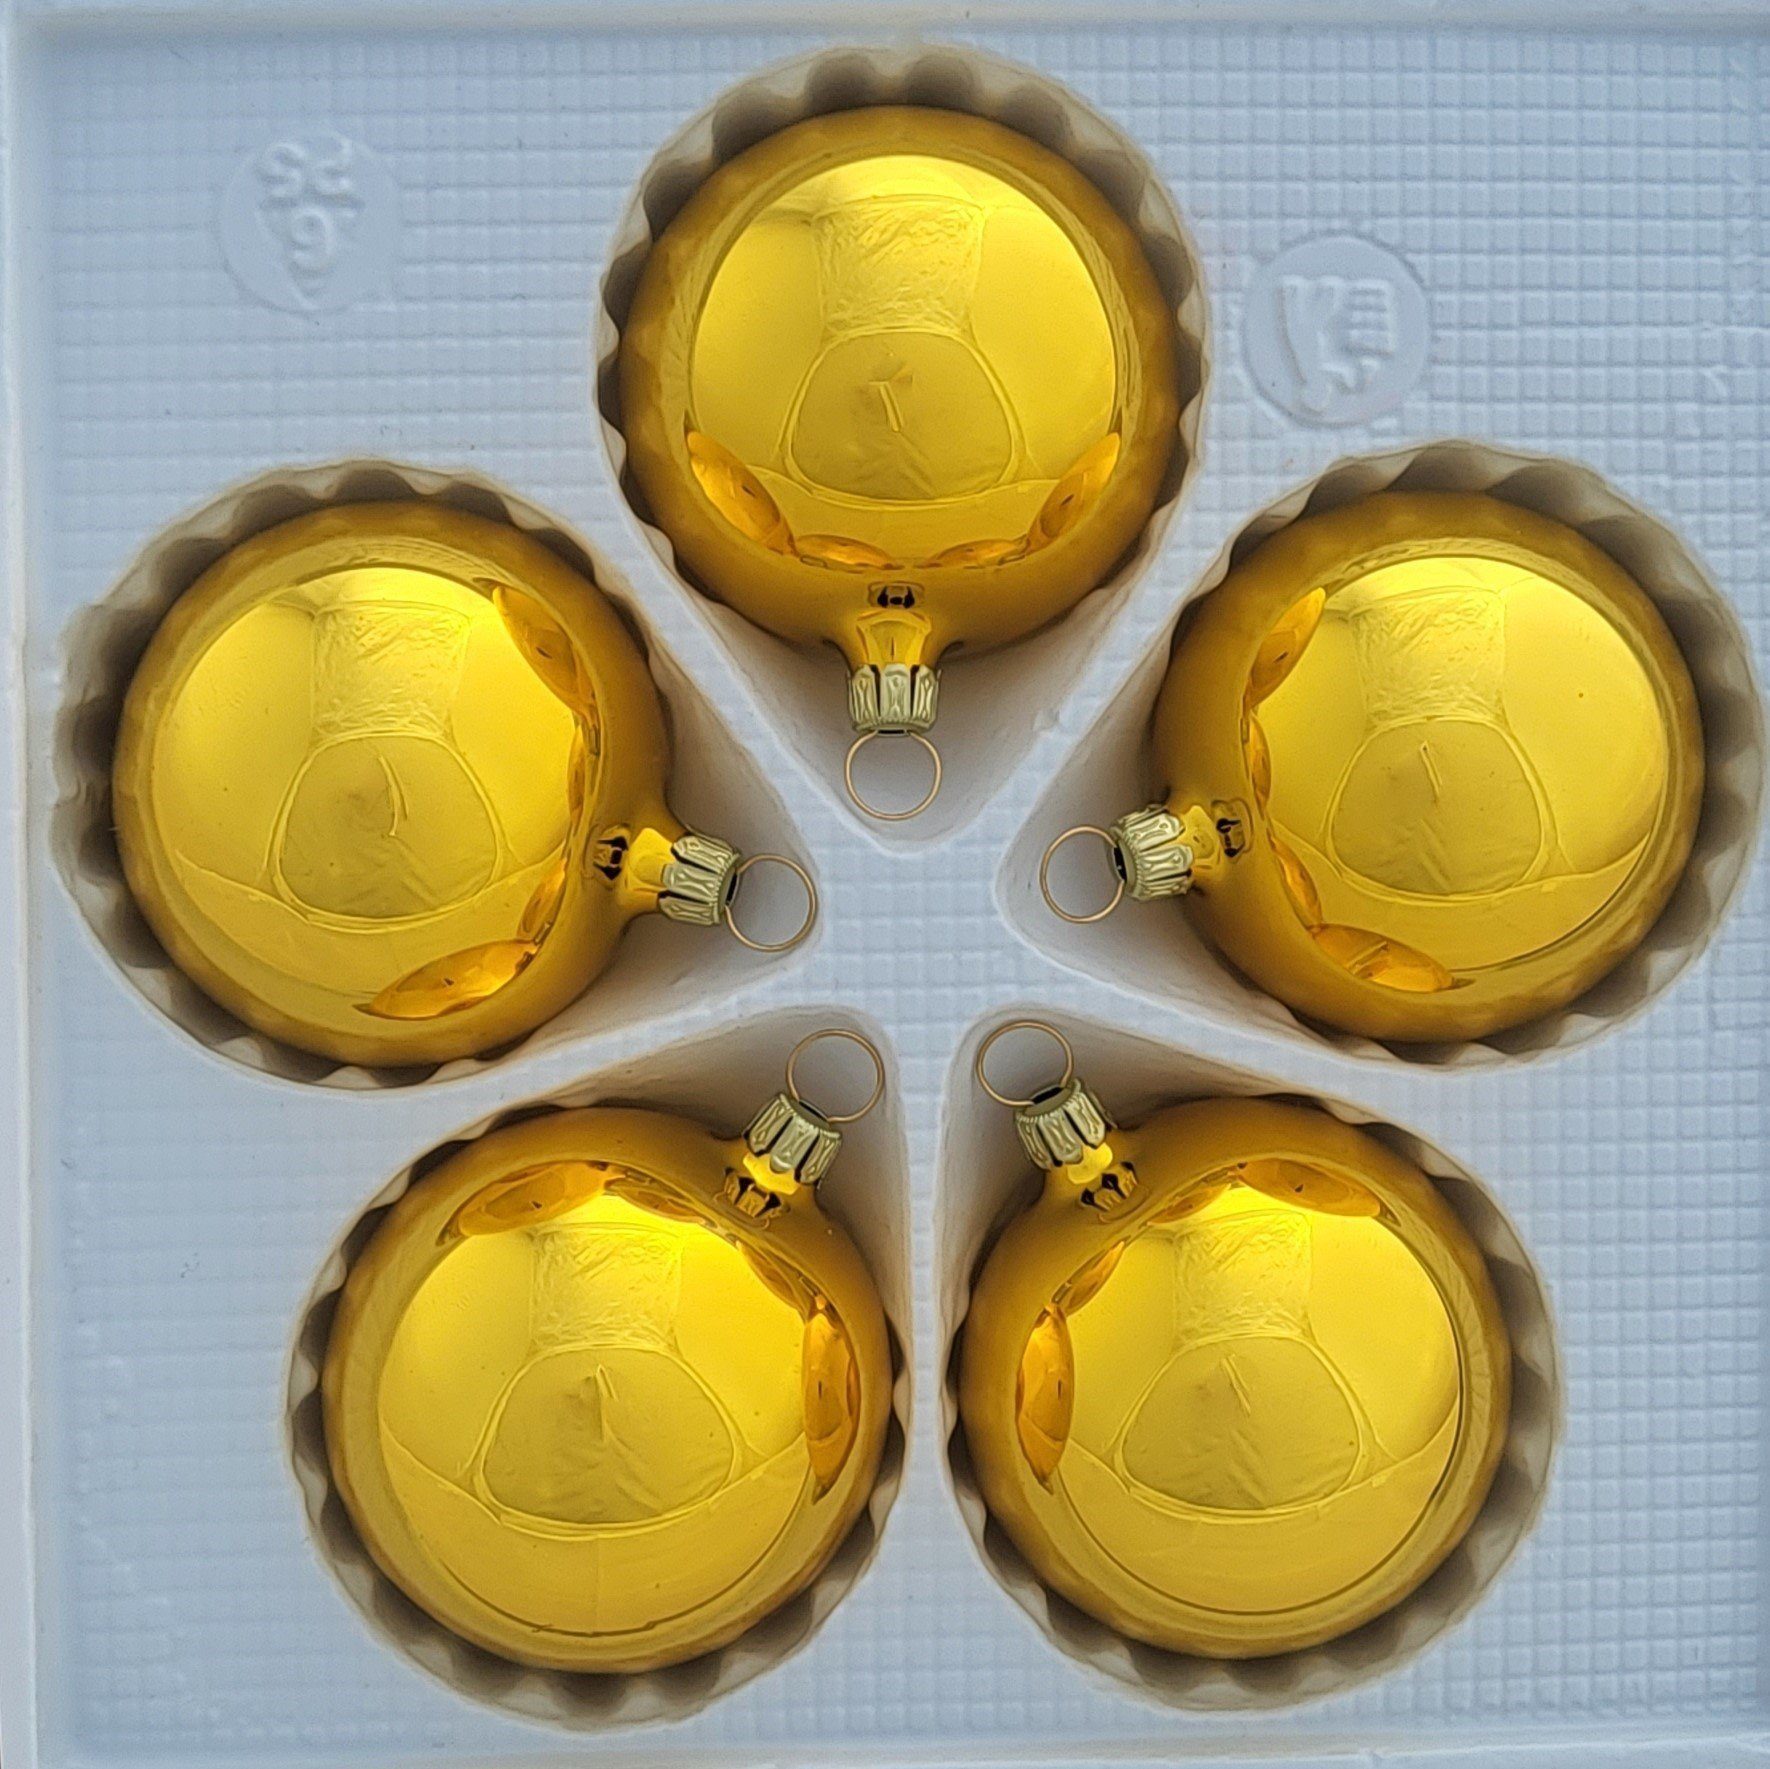 Lauschaer Glas Christbaumschmuck Christbaumschmuckkugeln in verschiedenen Farben und Größen gold glanz